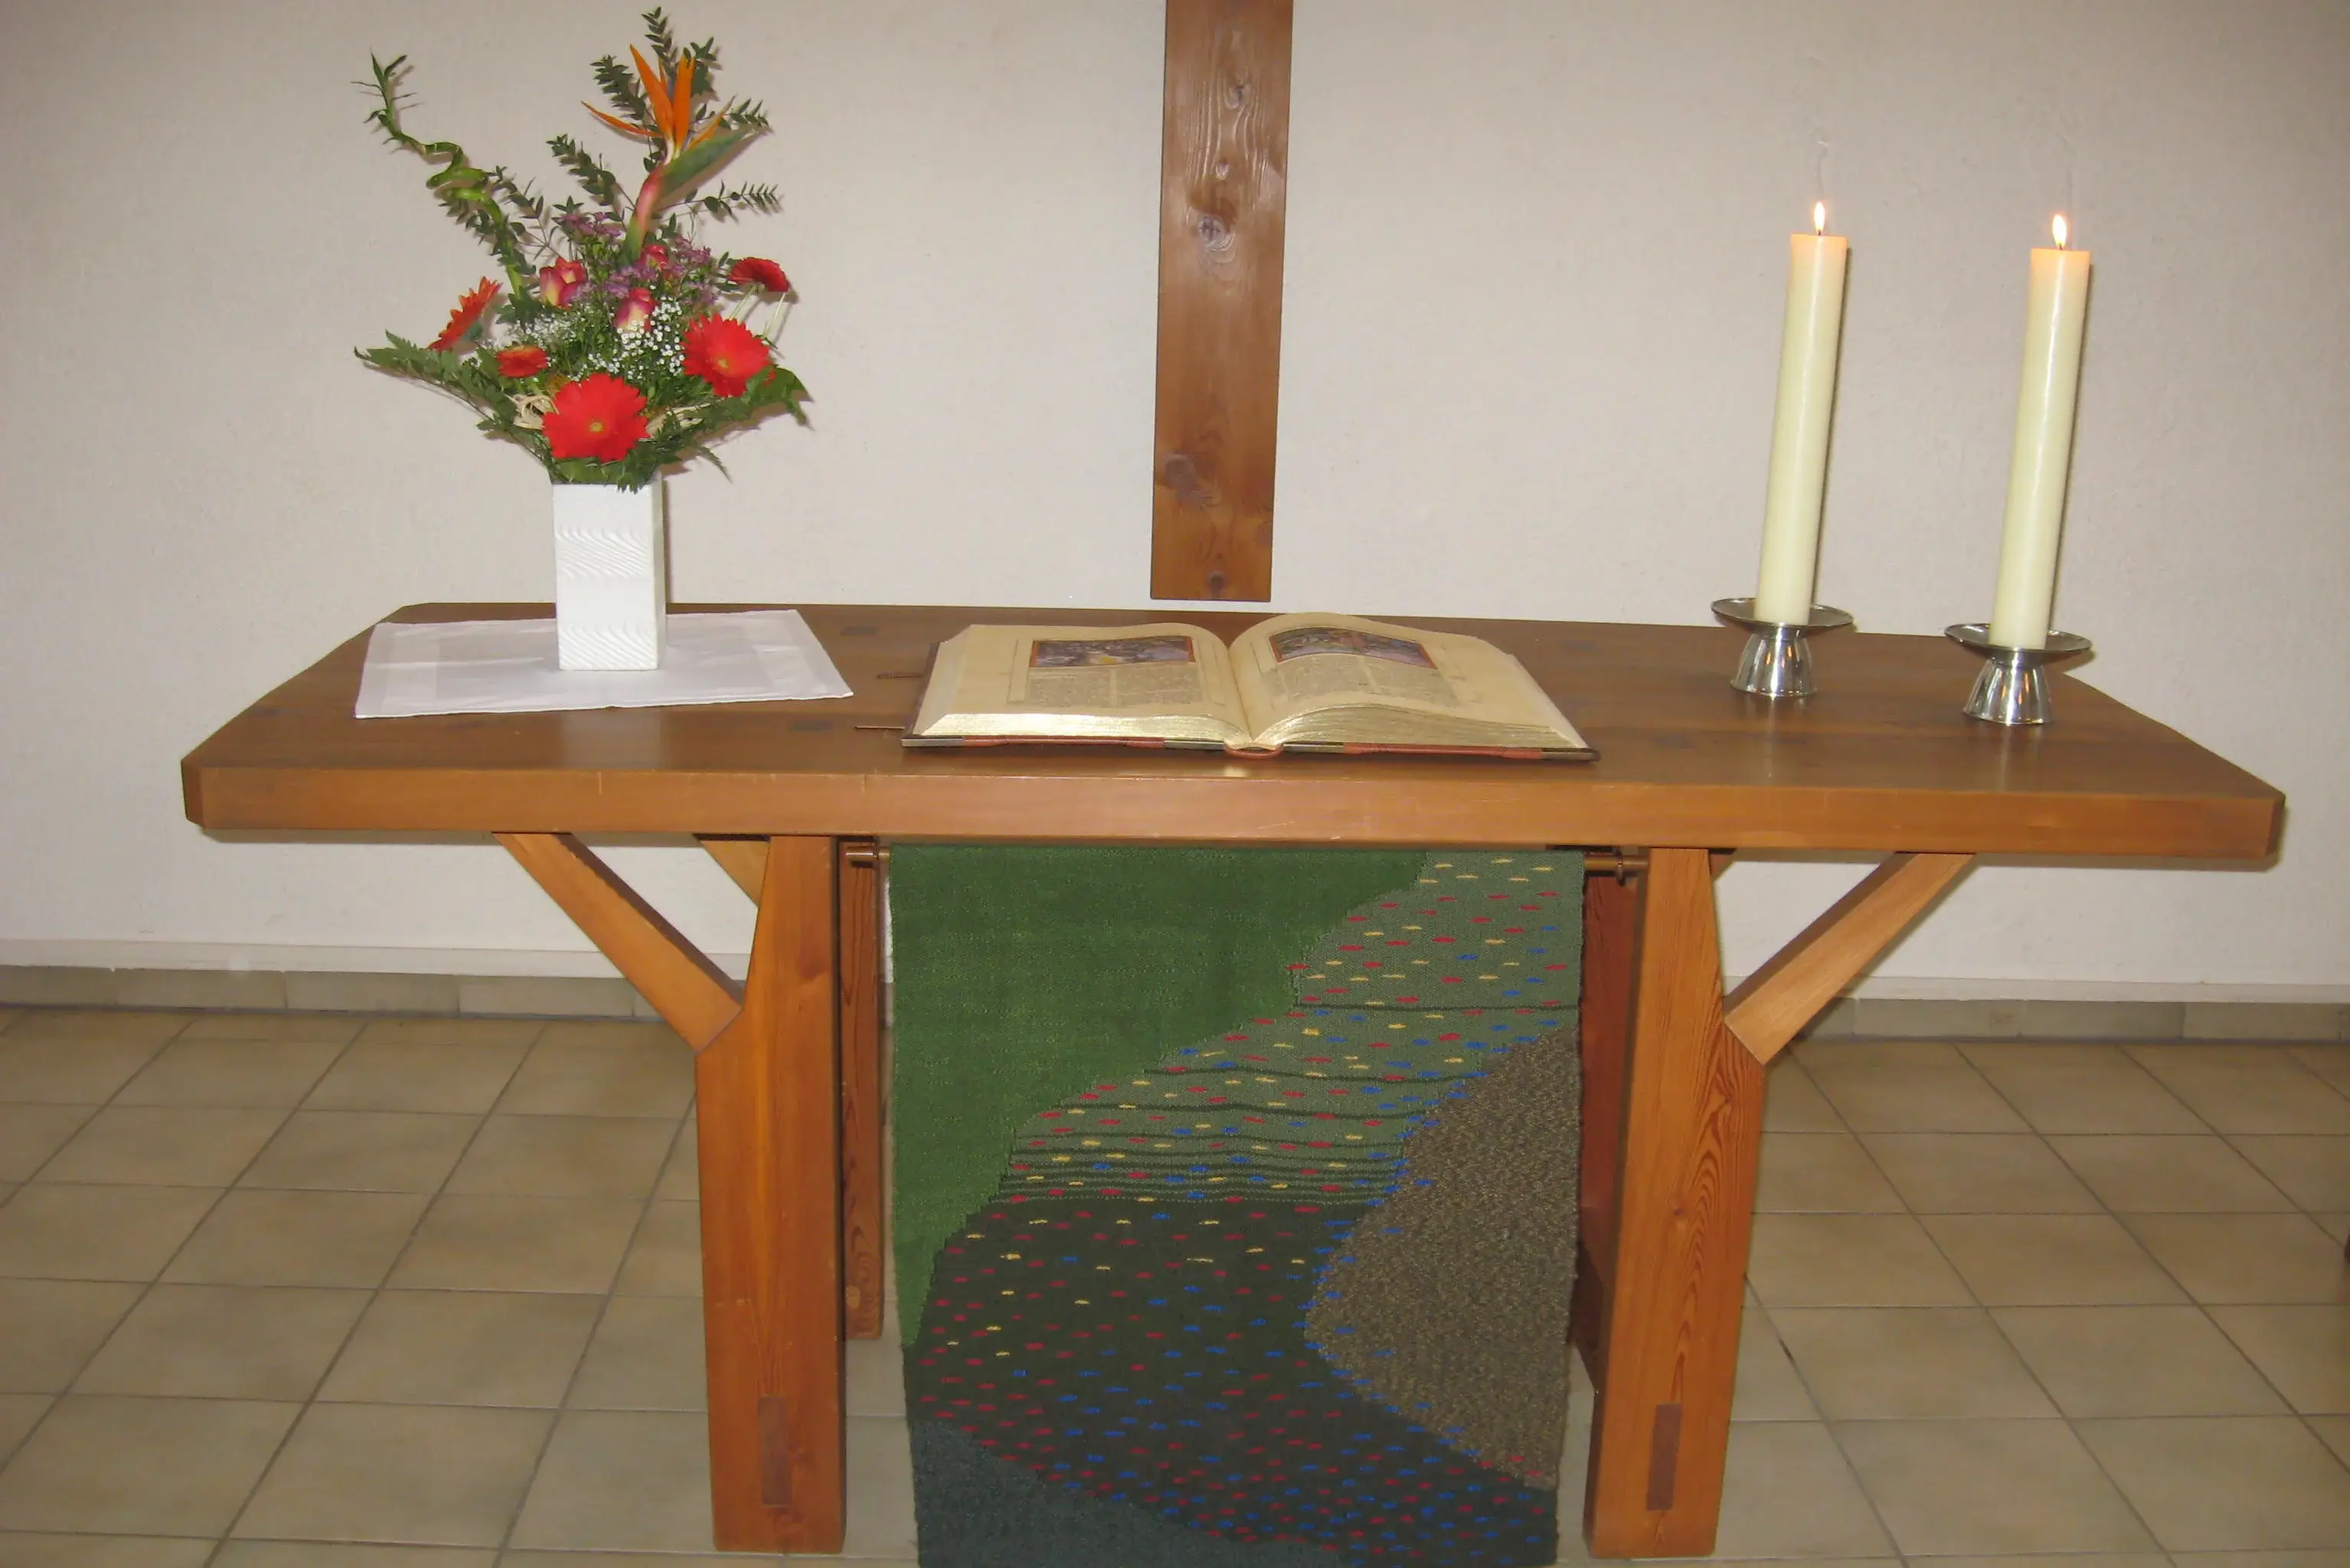 Der Altar mit Kerzen und Blumenstrauß